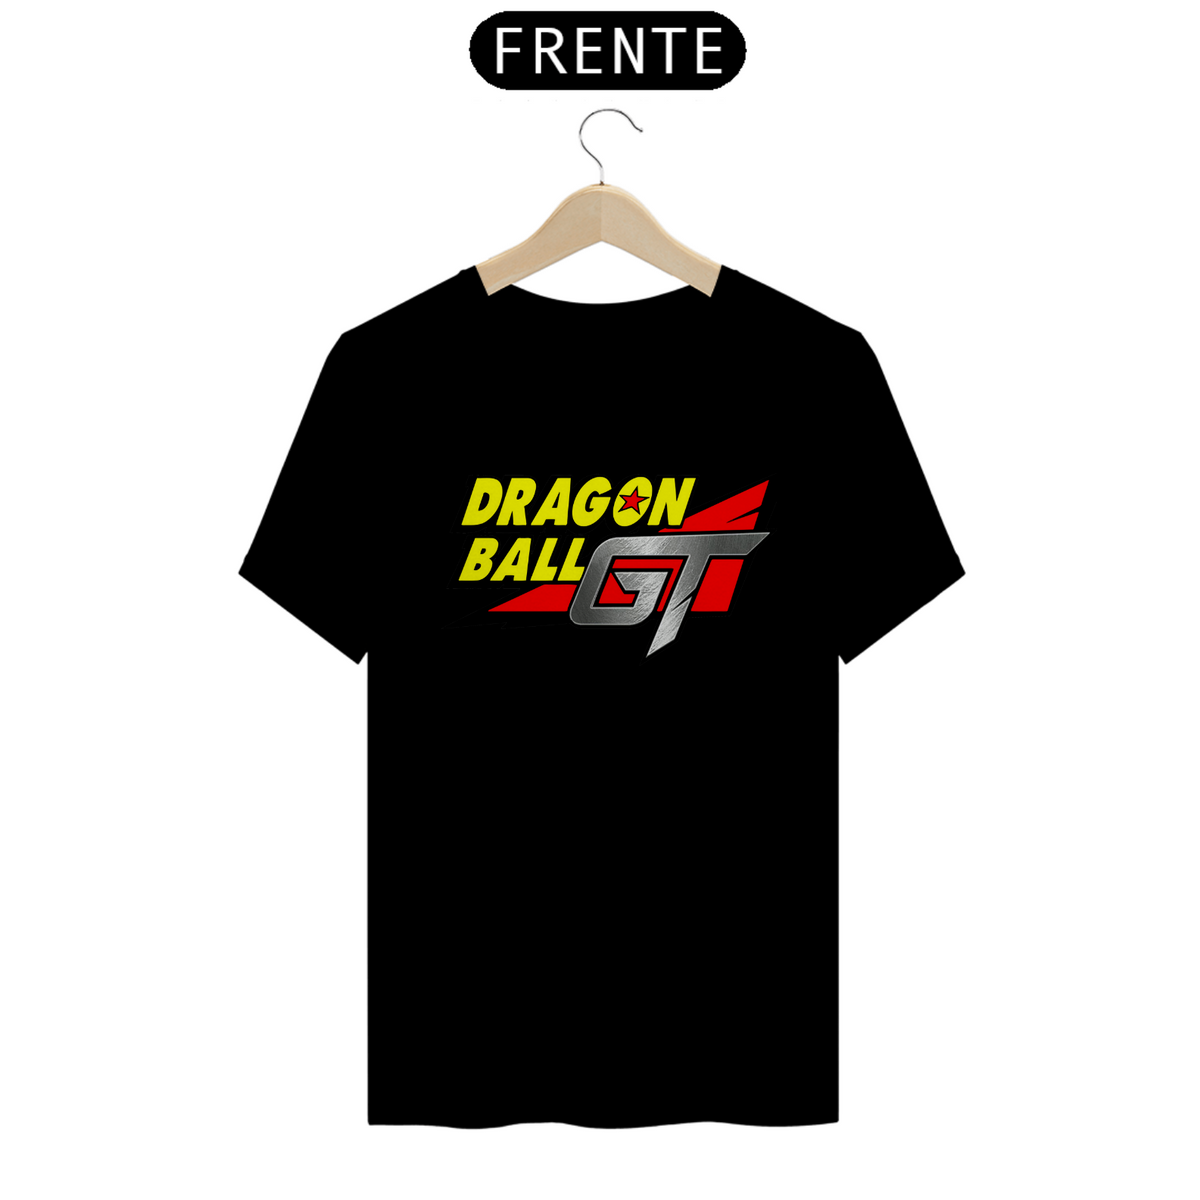 Nome do produto: Camisa logo Dragon Ball GT (versão americana)